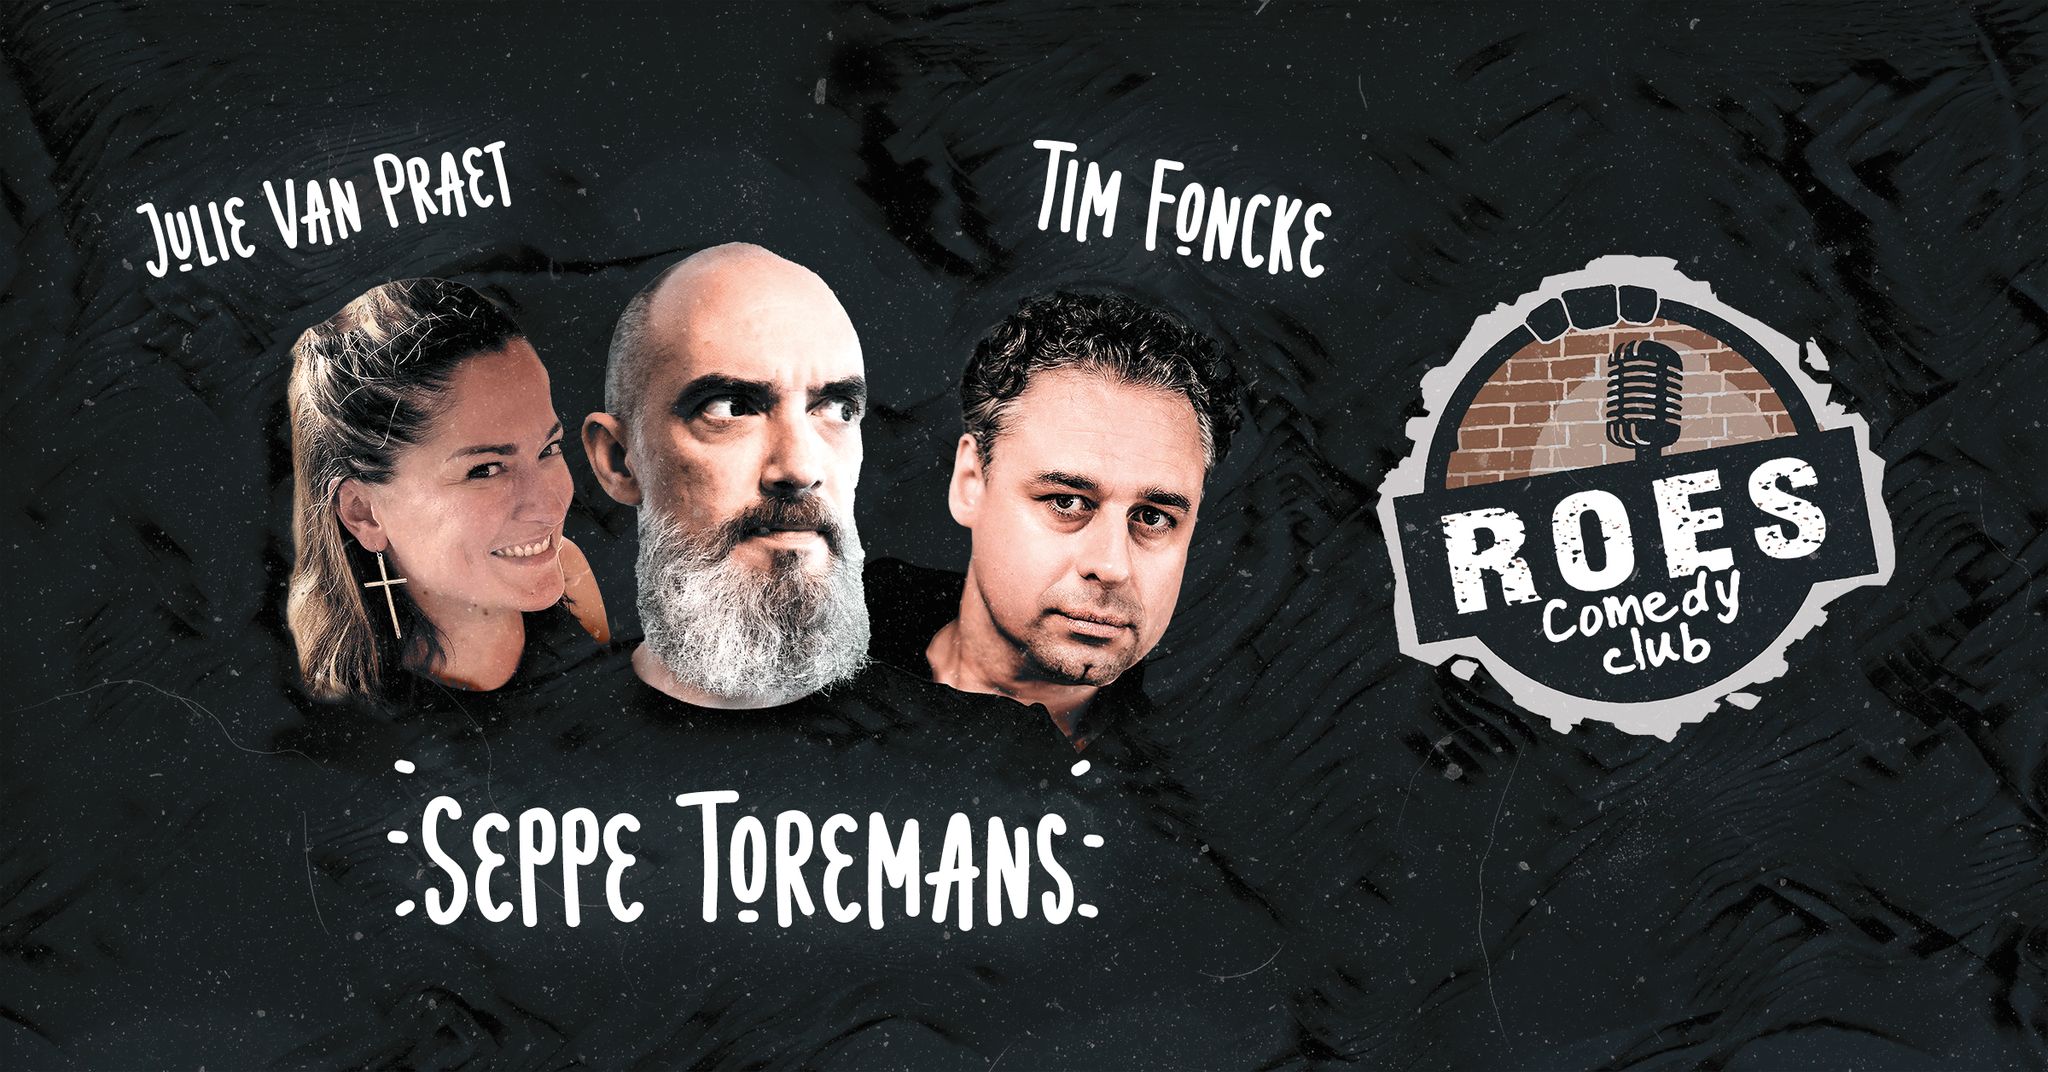 Ticket kopen voor evenement Roes Comedy Club: Seppe Toremans